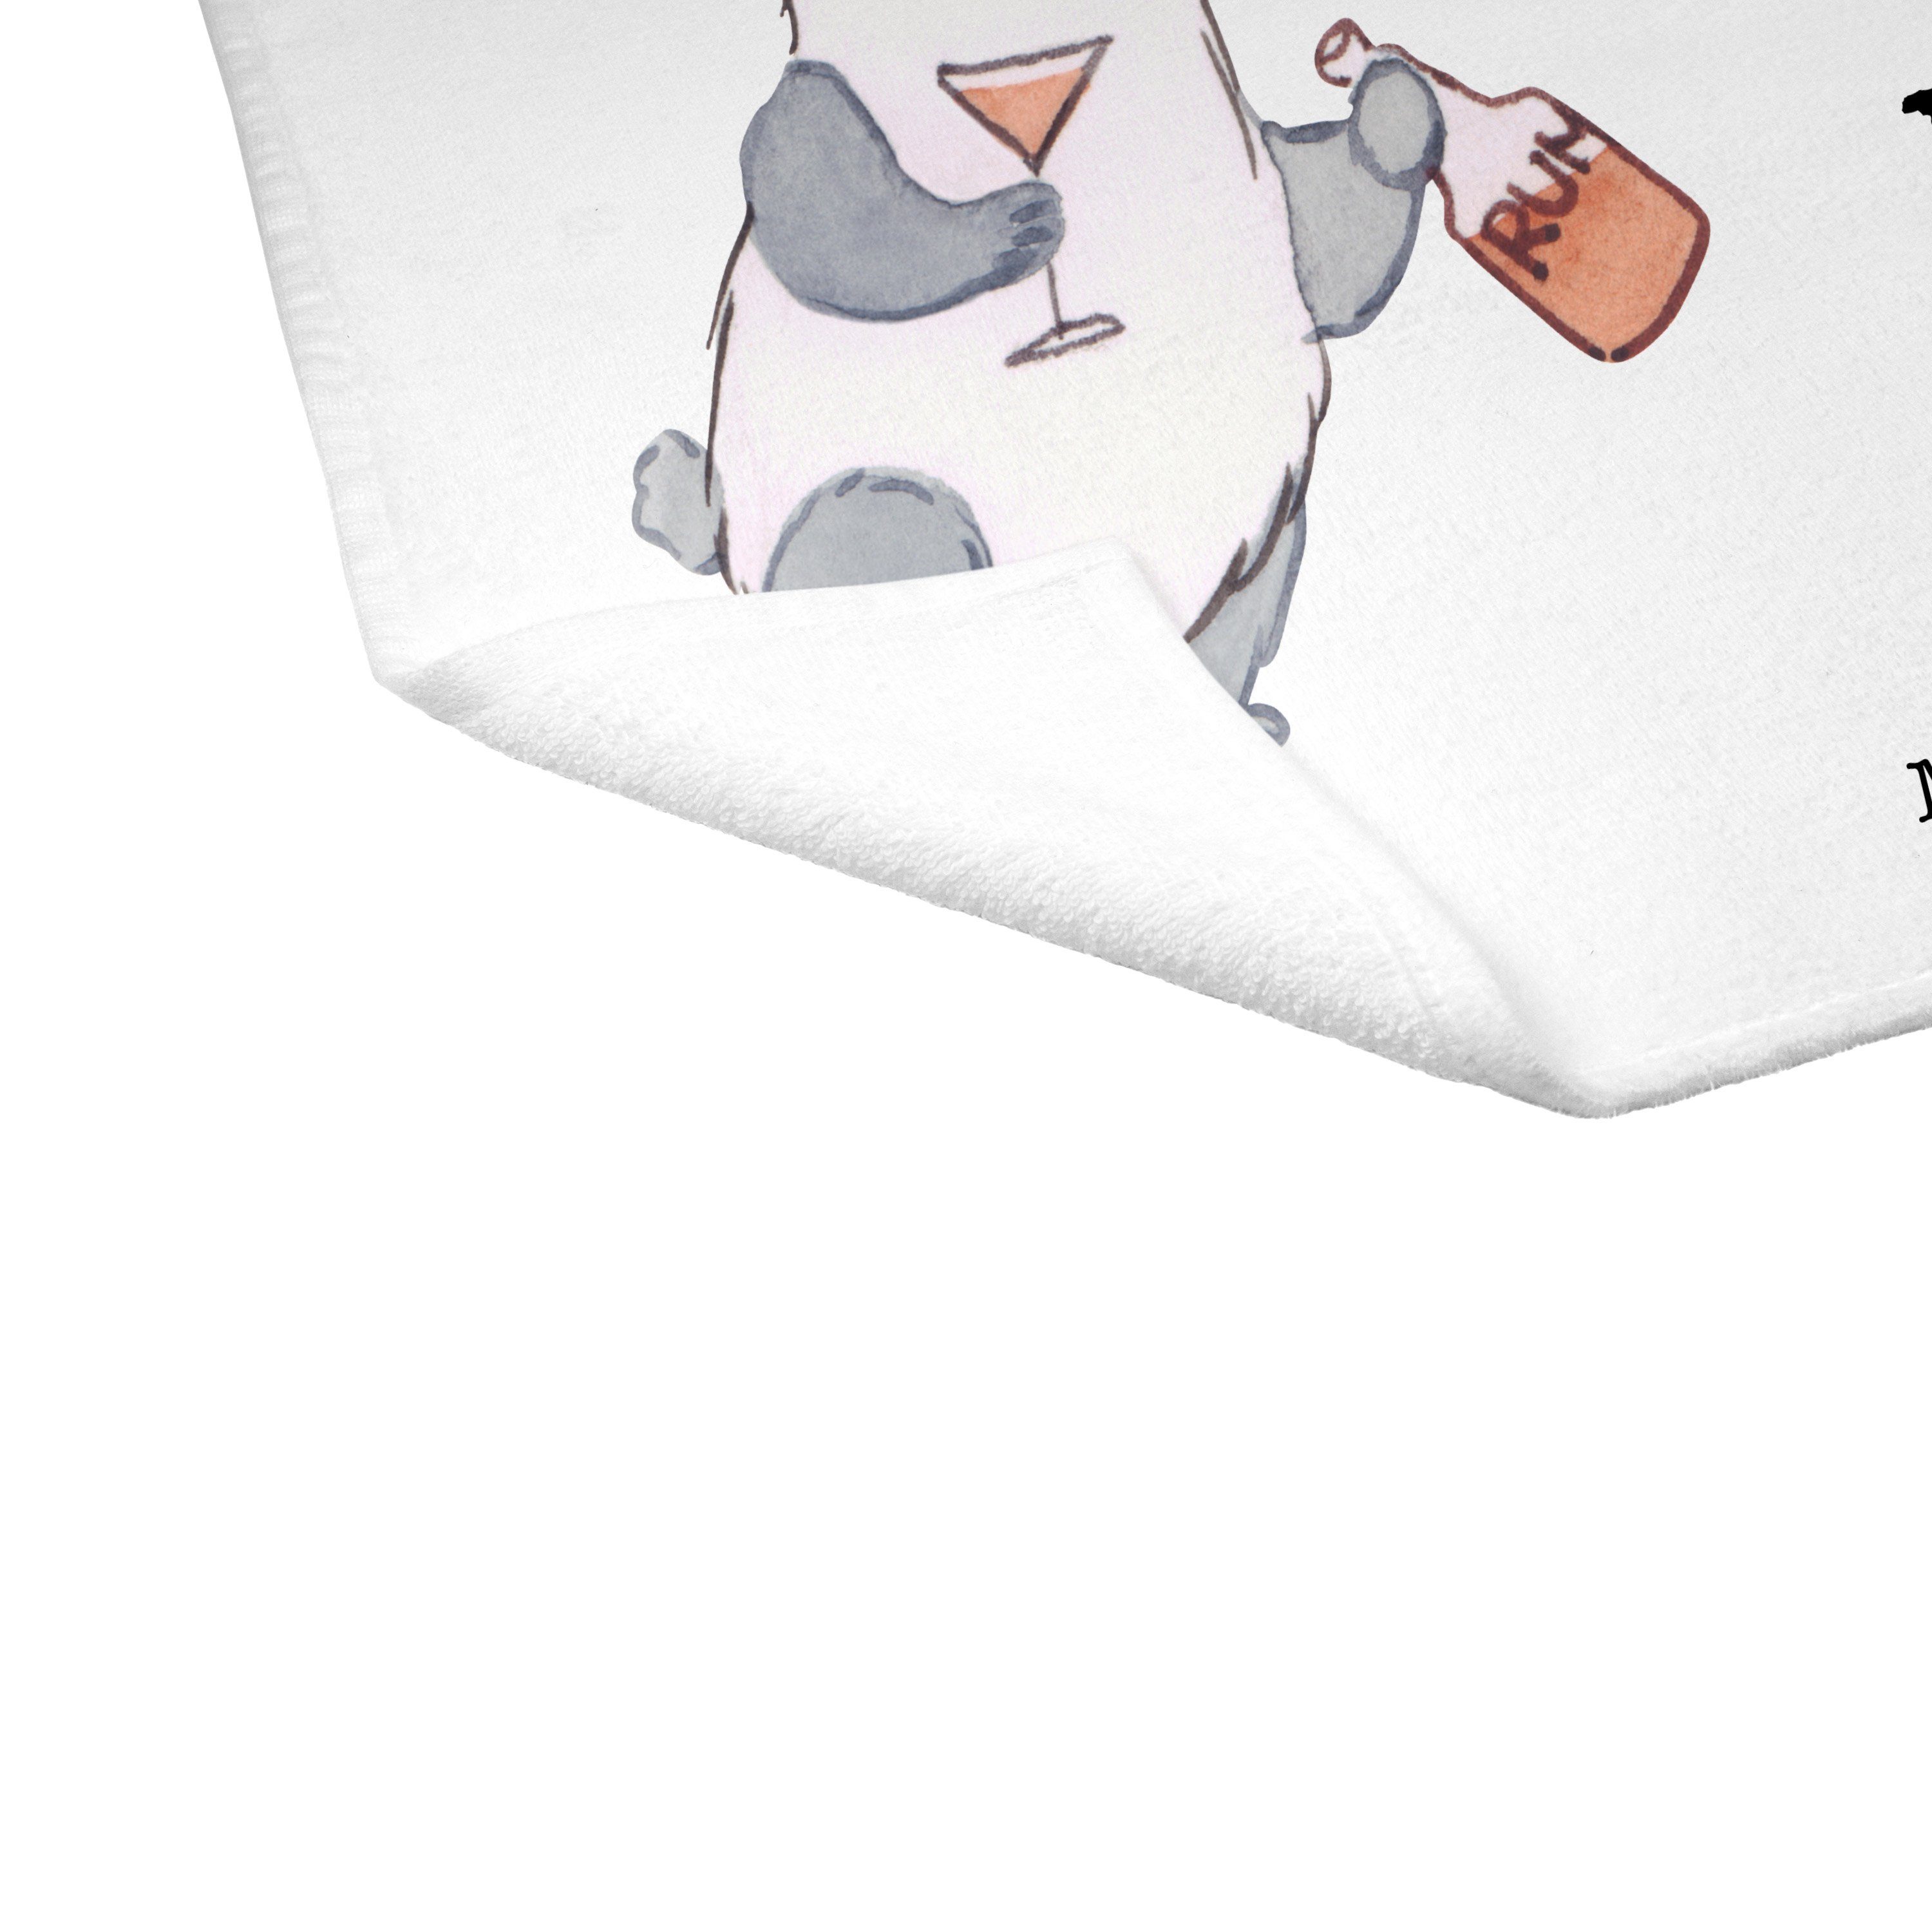 Mr. & Mrs. (1-St) Weiß - Handtuch aus Panda - Kneipenwirt Leidenschaft Reisehandtuch, Gastwi, Geschenk